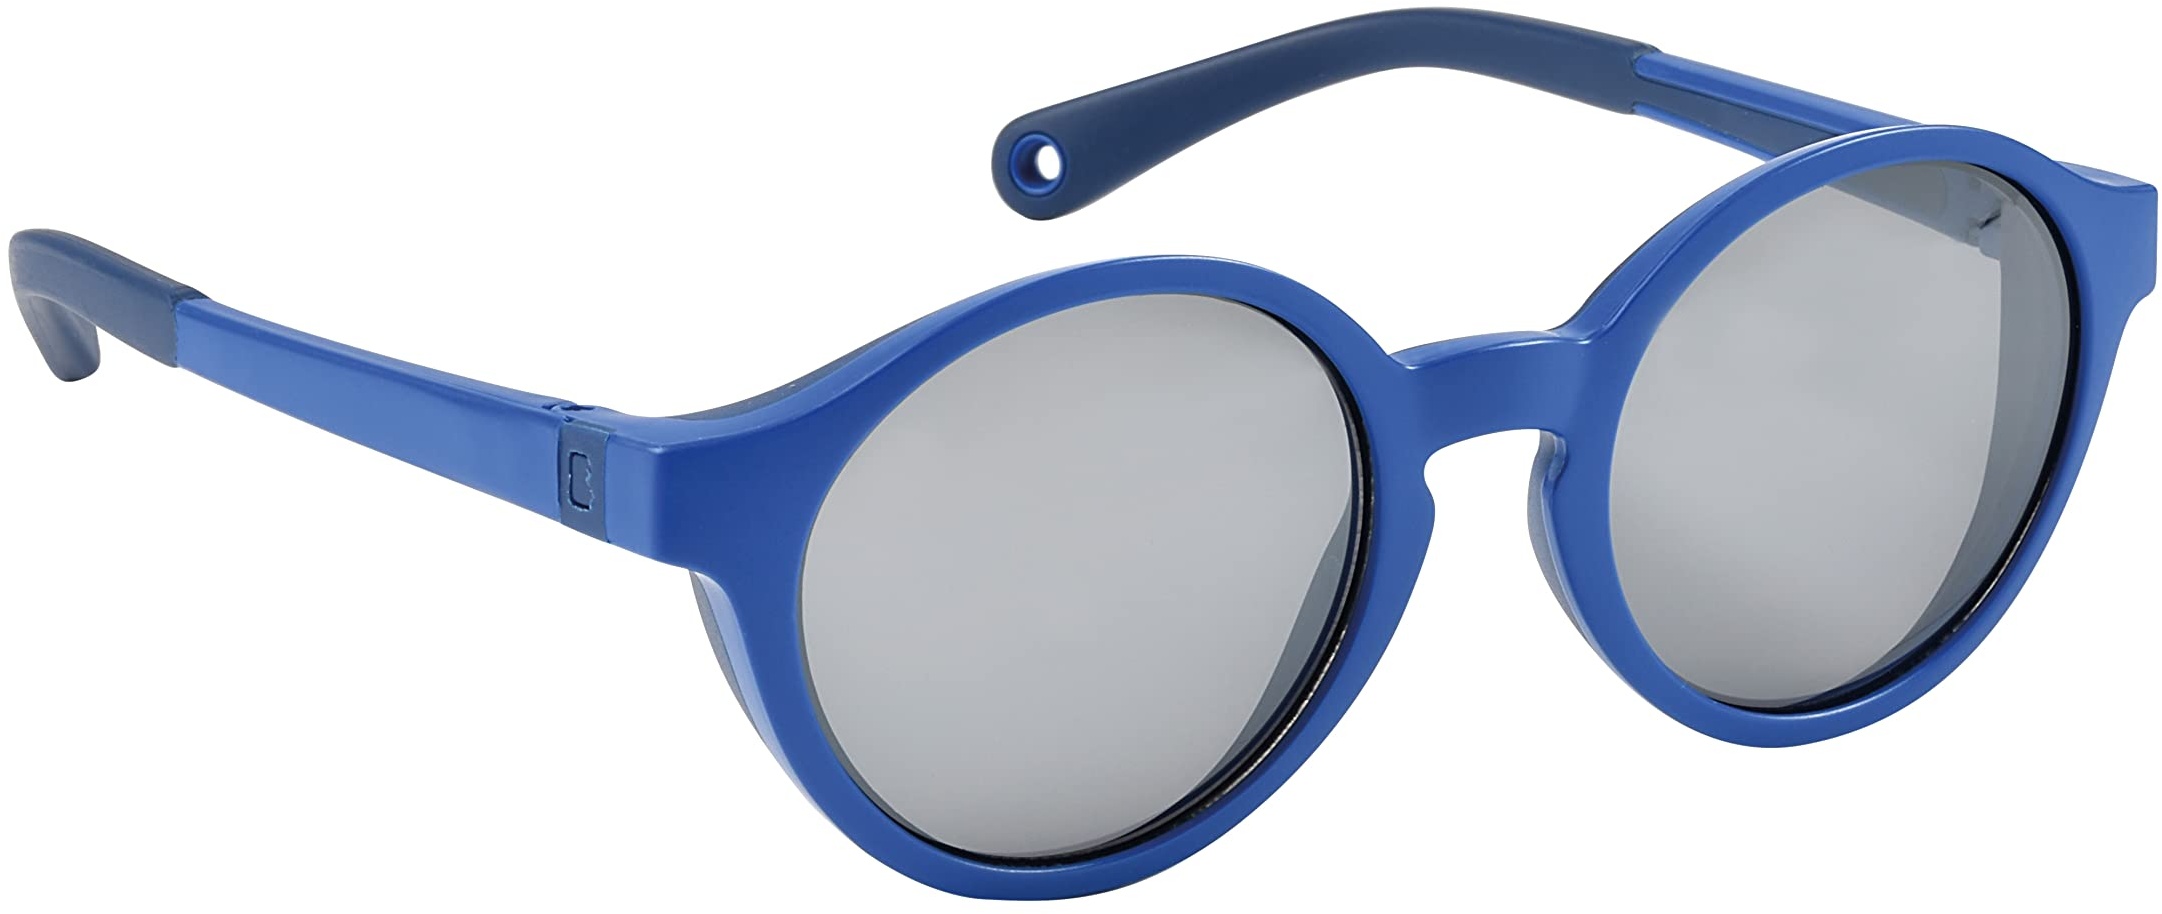 Béaba, Sonnenbrille für Kinder 2-4 Jahre, 100% UV-Schutz – CAT 3, Seitenschutz, optimaler Komfort, 360° verstellbare Bügel, Mazarine Blau